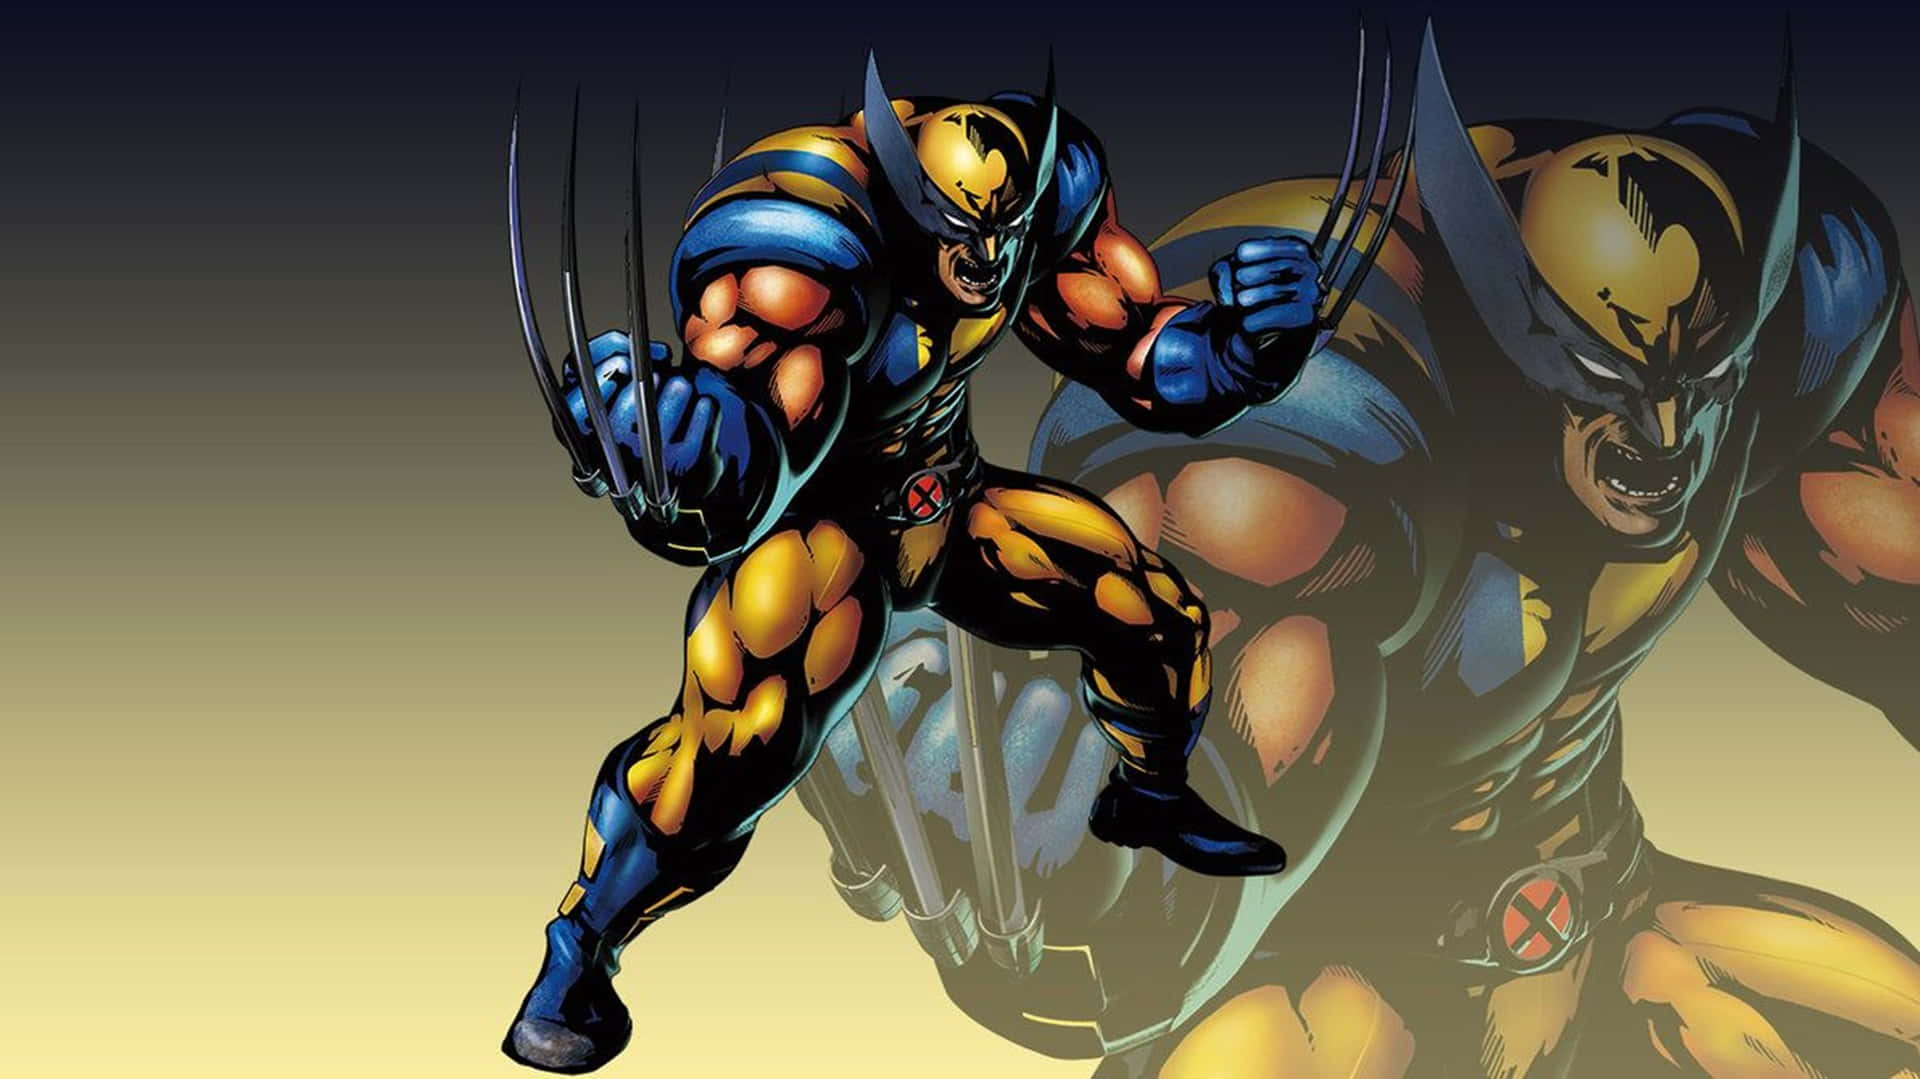 Potentesuperhéroe De Marvel Wolverine En Alta Definición. Fondo de pantalla